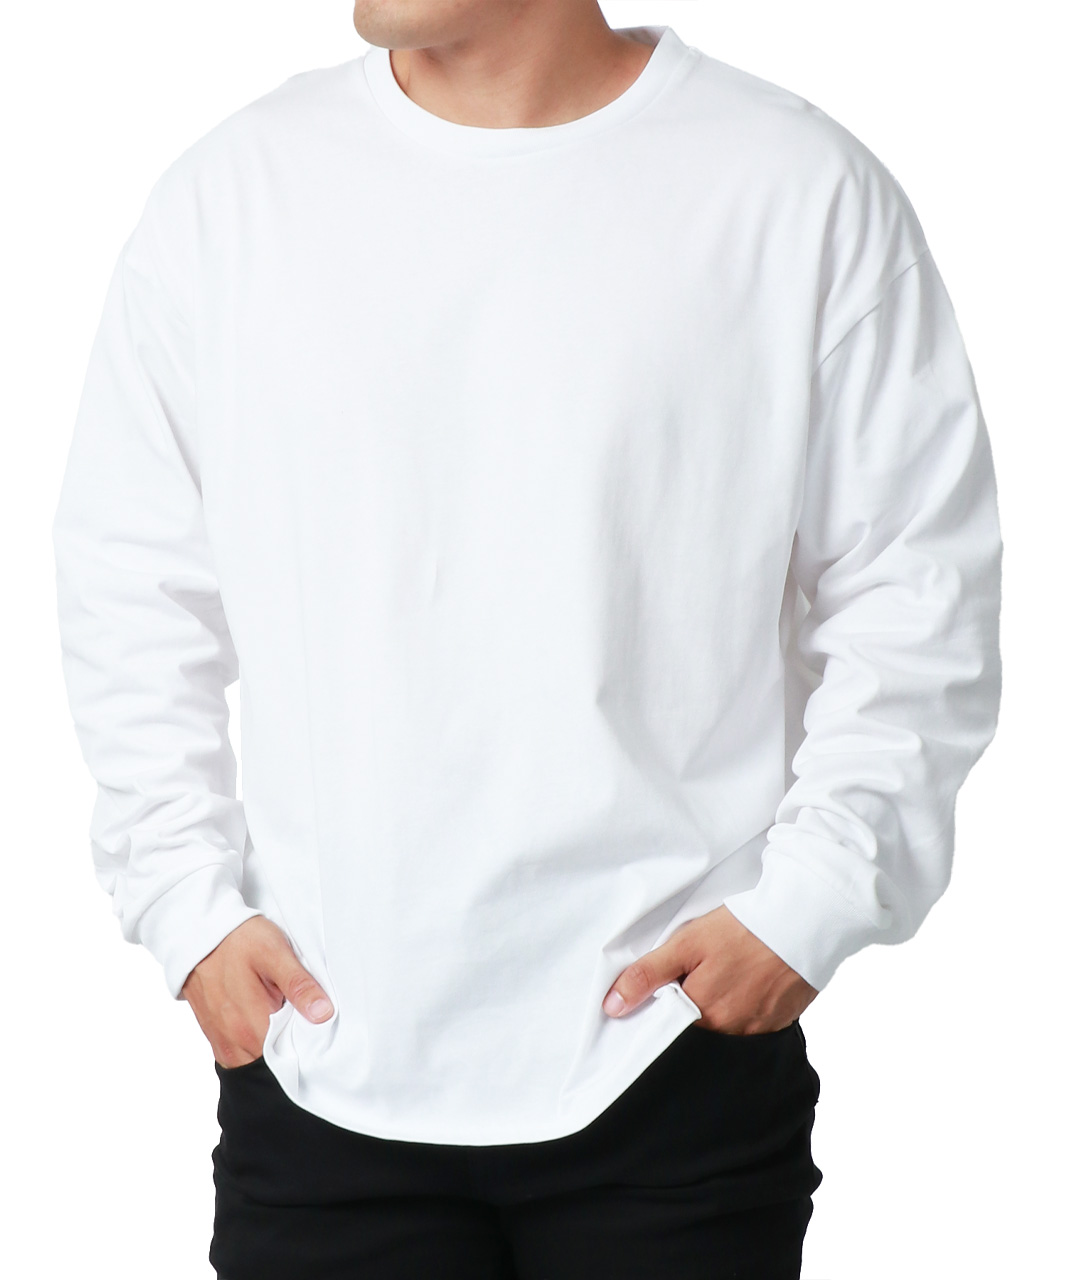 大きいサイズメンズ Tシャツ MRU 長袖 無地 吸汗速乾 UVカット